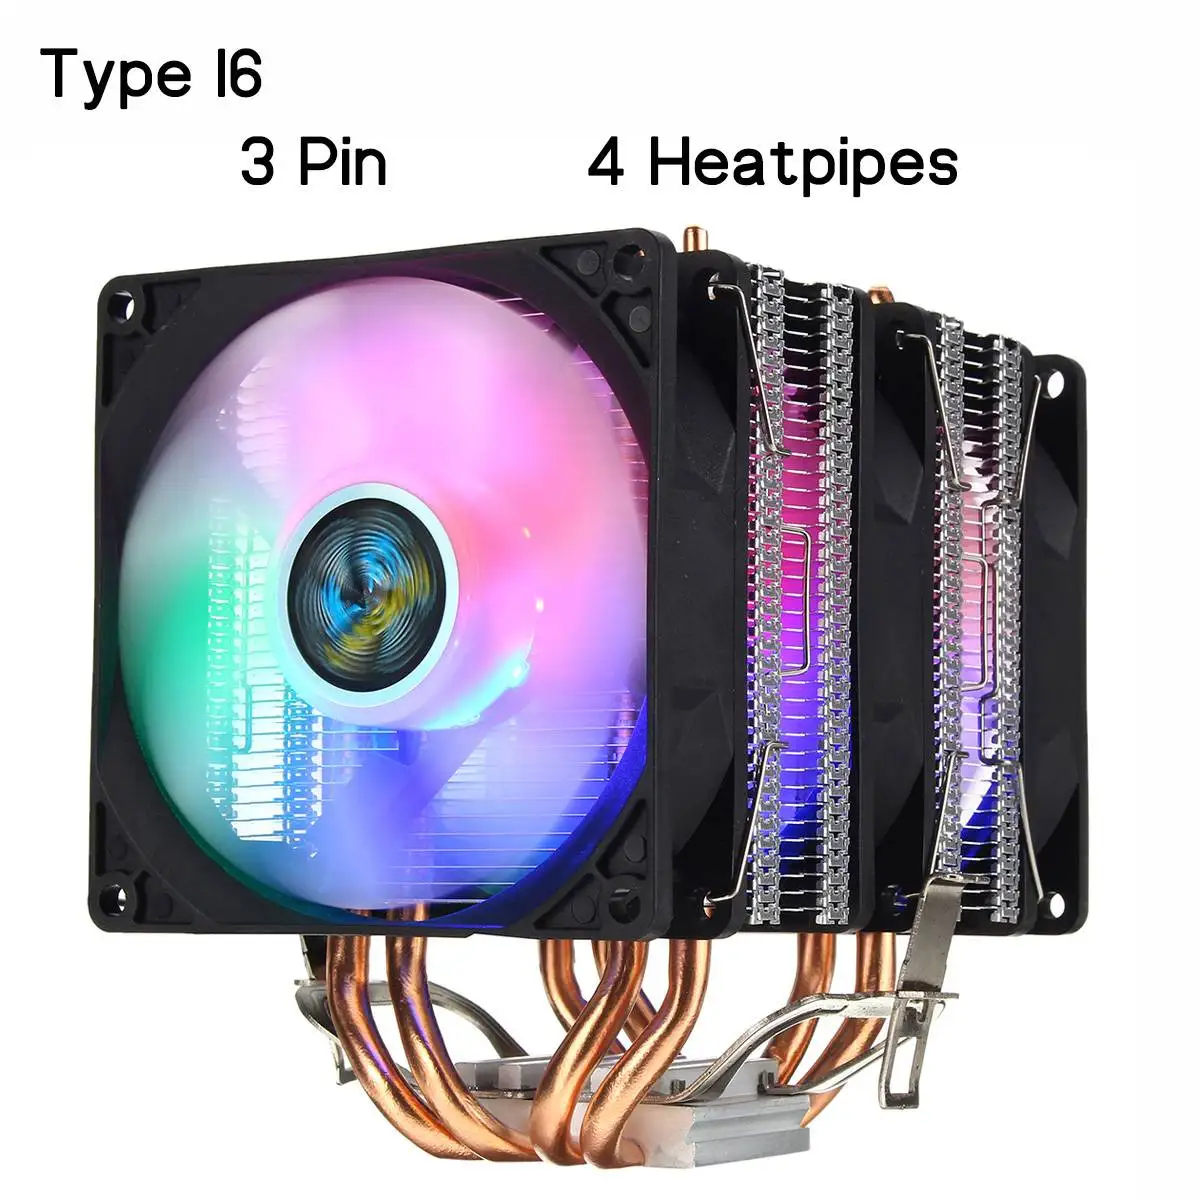 Процессор охлаждающий вентилятор радиатора 2/4/6 Медь с тепловым стержнем heat pipe 3/4Pin RGB Вентилятор Кулер для Intel 775/1150/1151/1155/1156/1366 и AMD все платформы